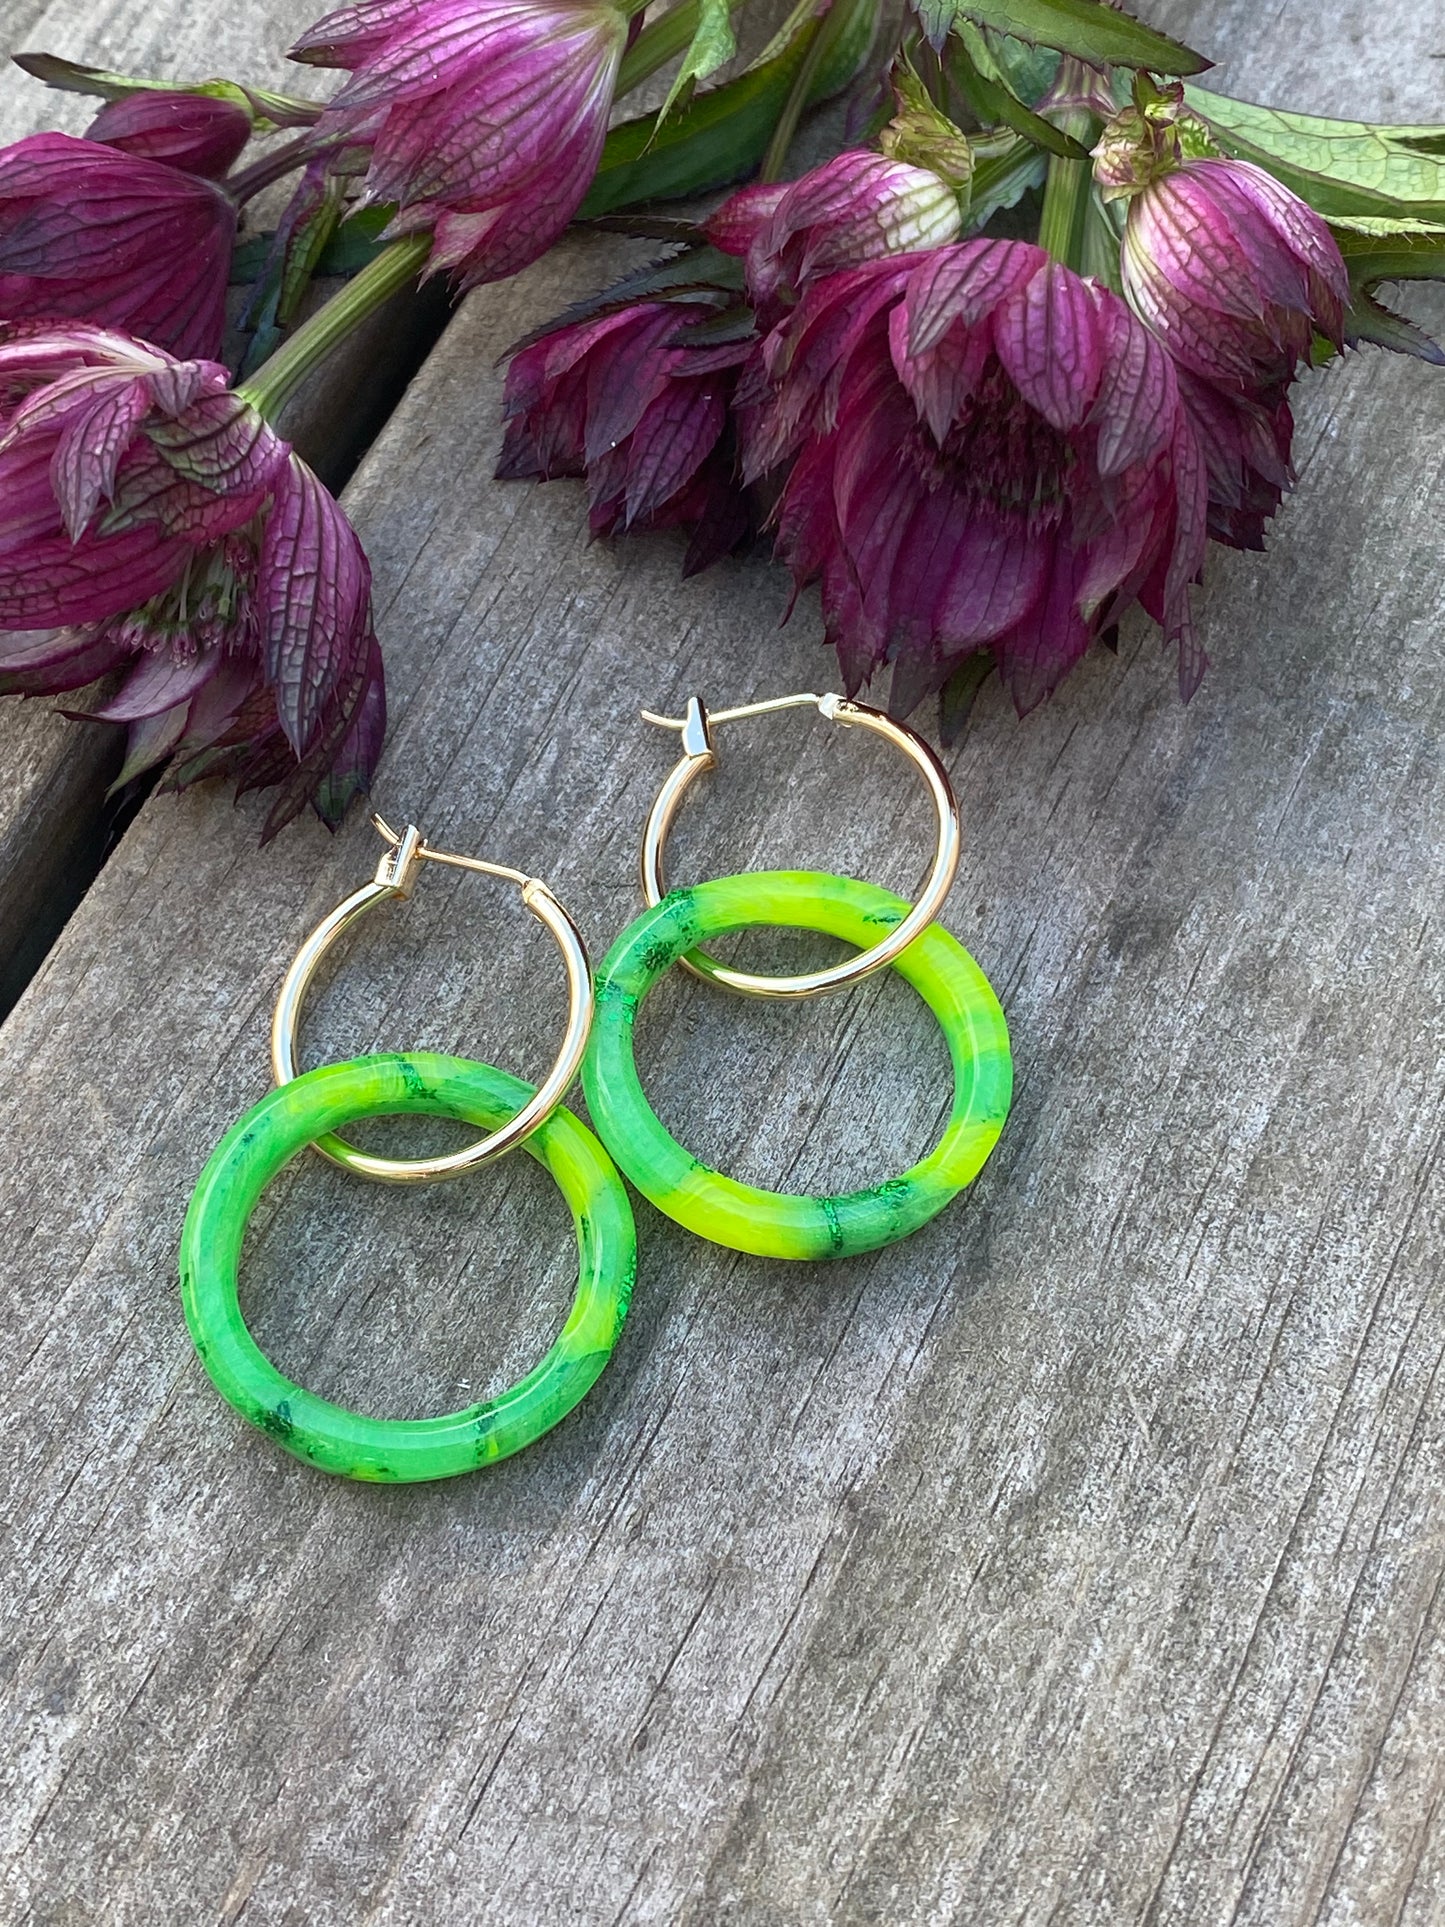 Fargeelsk-gressgrønne ringer